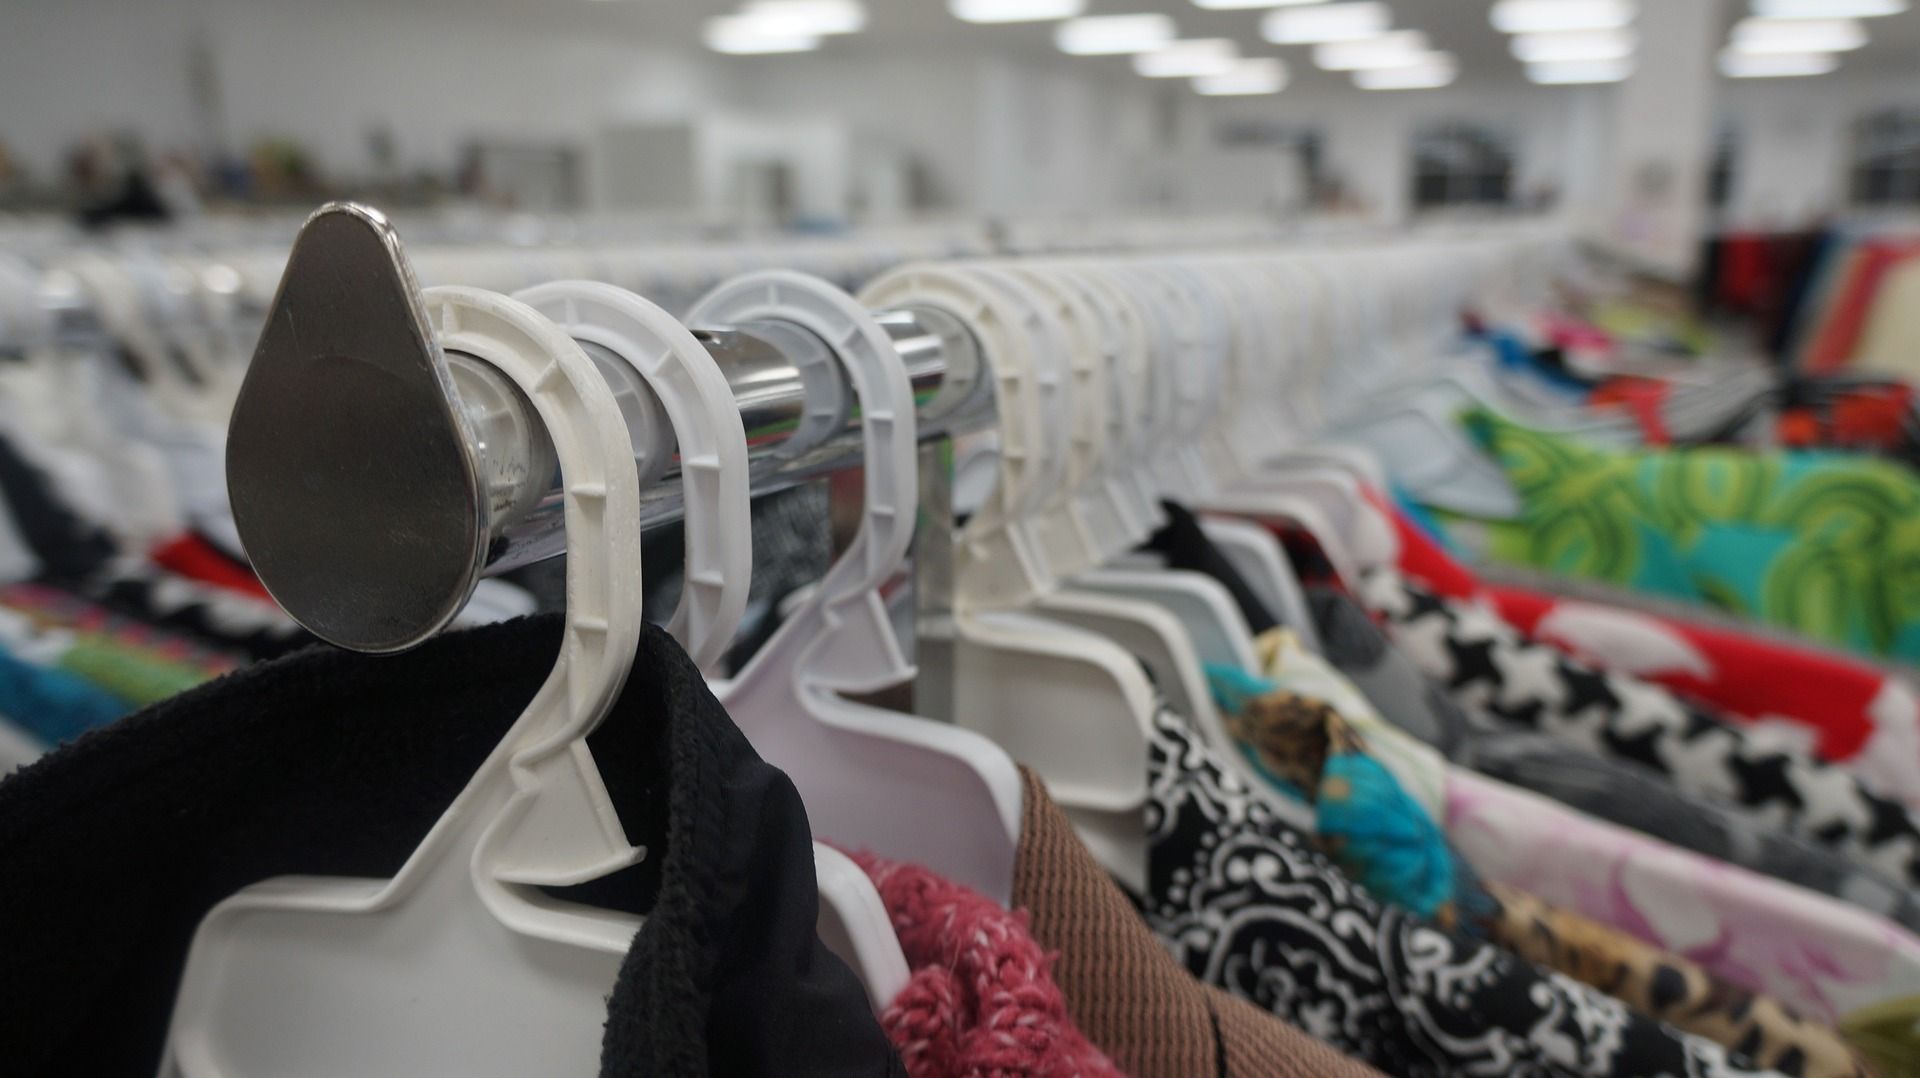 Pedagang Baju Bekas Impor di Jakarta Kesulitan